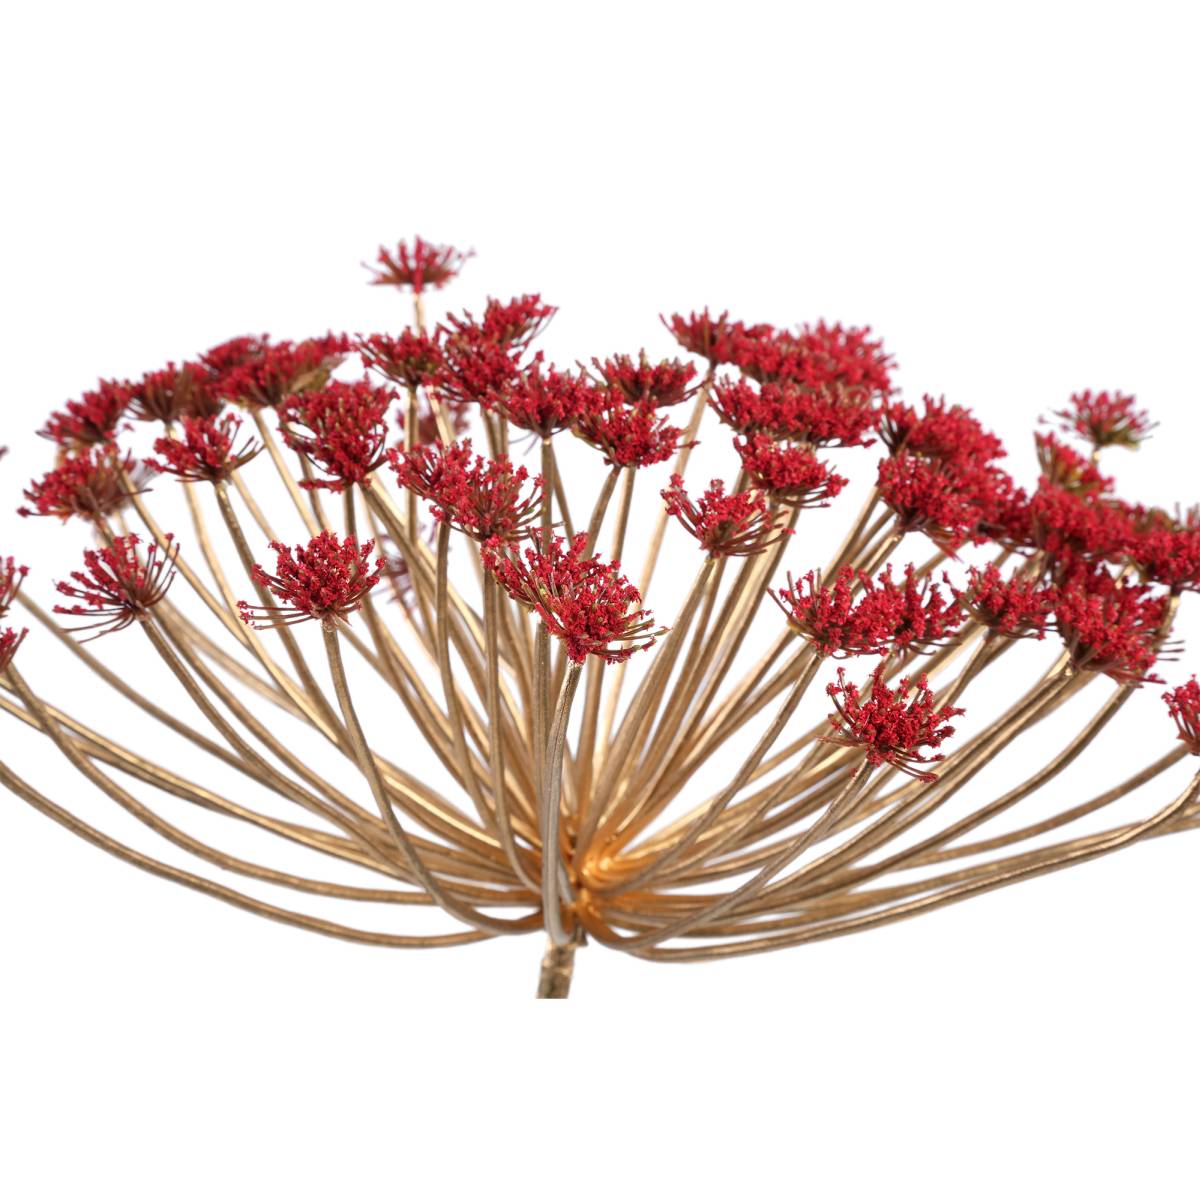 Ptmd branche artificielles queen - 7x43x82 cm - plastique - rouge